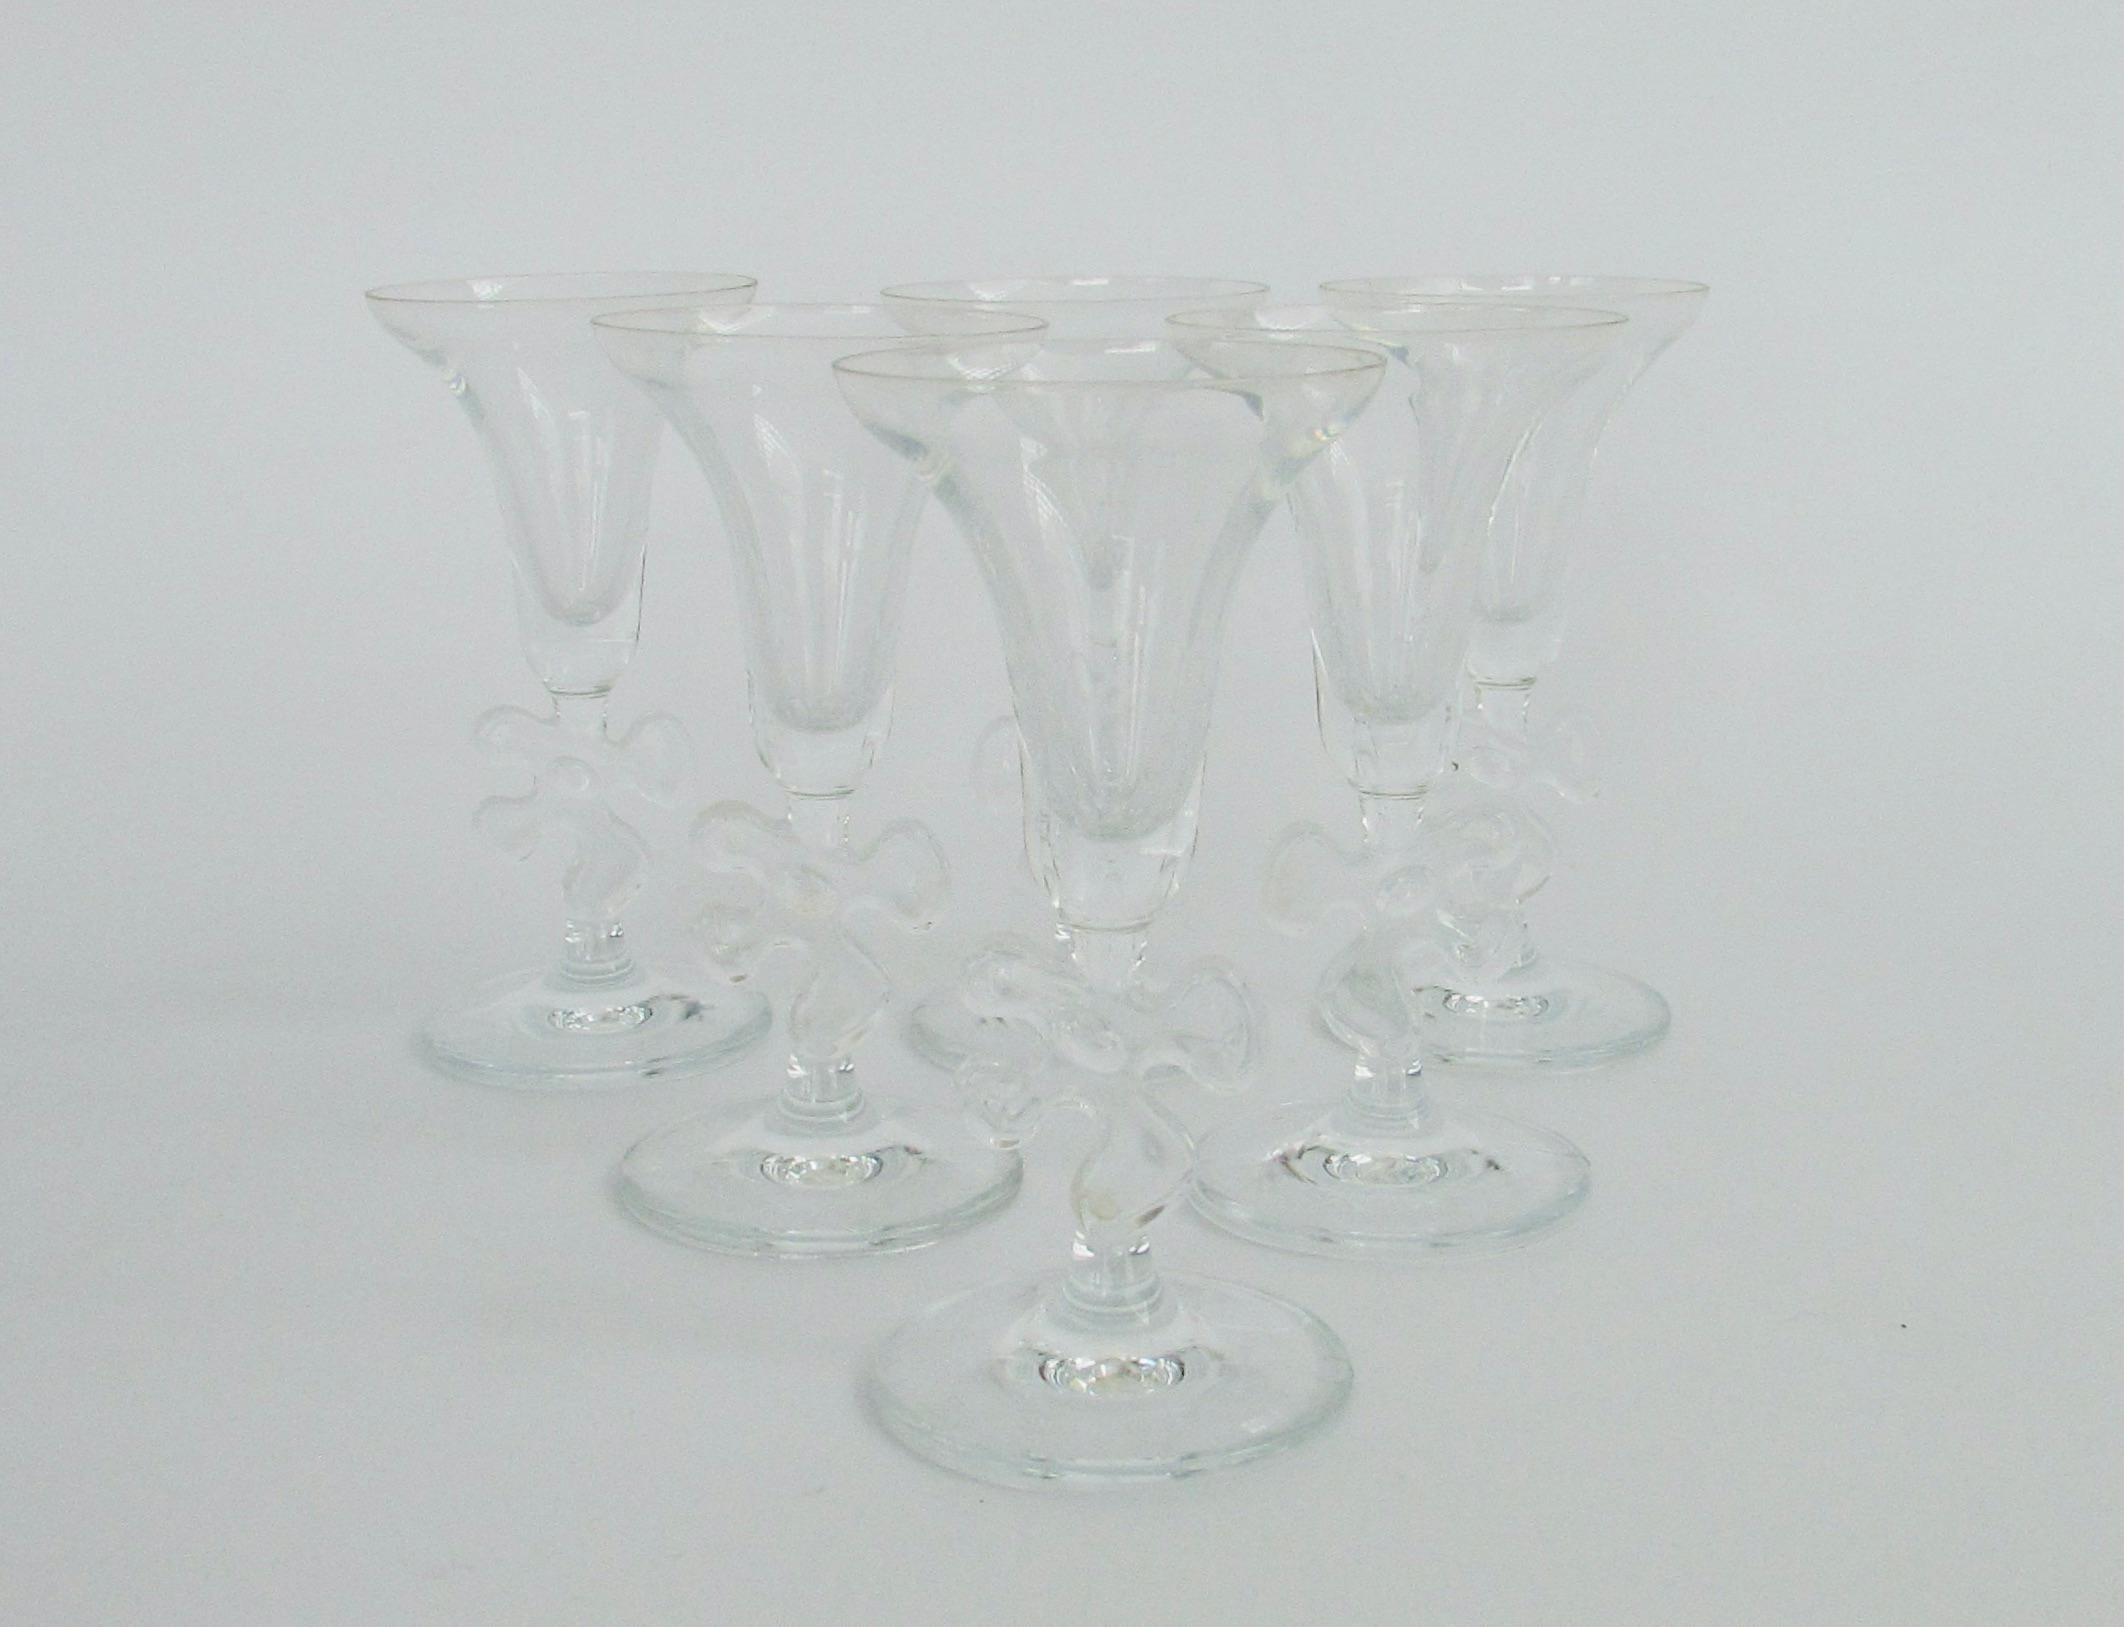 Sechs elegante und skurrile Gläser für einen Aperitif oder einen Cocktail, entworfen von Marc Aurel. Glockenförmiges Glas auf biomorphem Stichsägestiel . Sauer gestempelt Marc Aurel . 